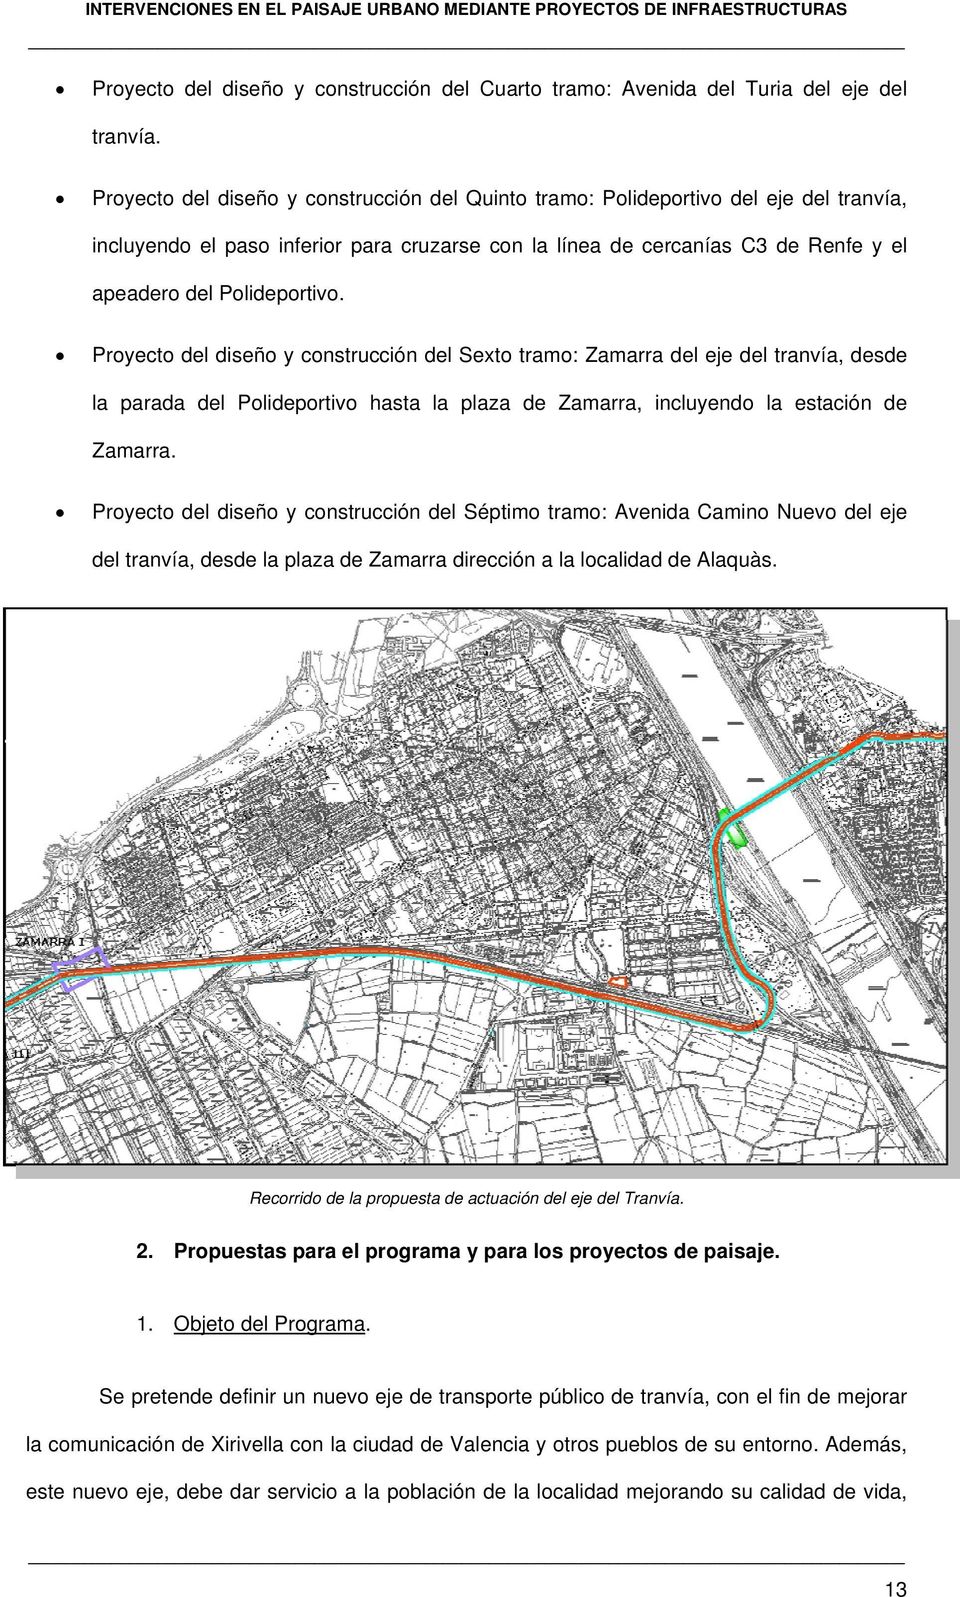 Proyecto del diseño y construcción del Sexto tramo: Zamarra del eje del tranvía, desde la parada del Polideportivo hasta la plaza de Zamarra, incluyendo la estación de Zamarra.